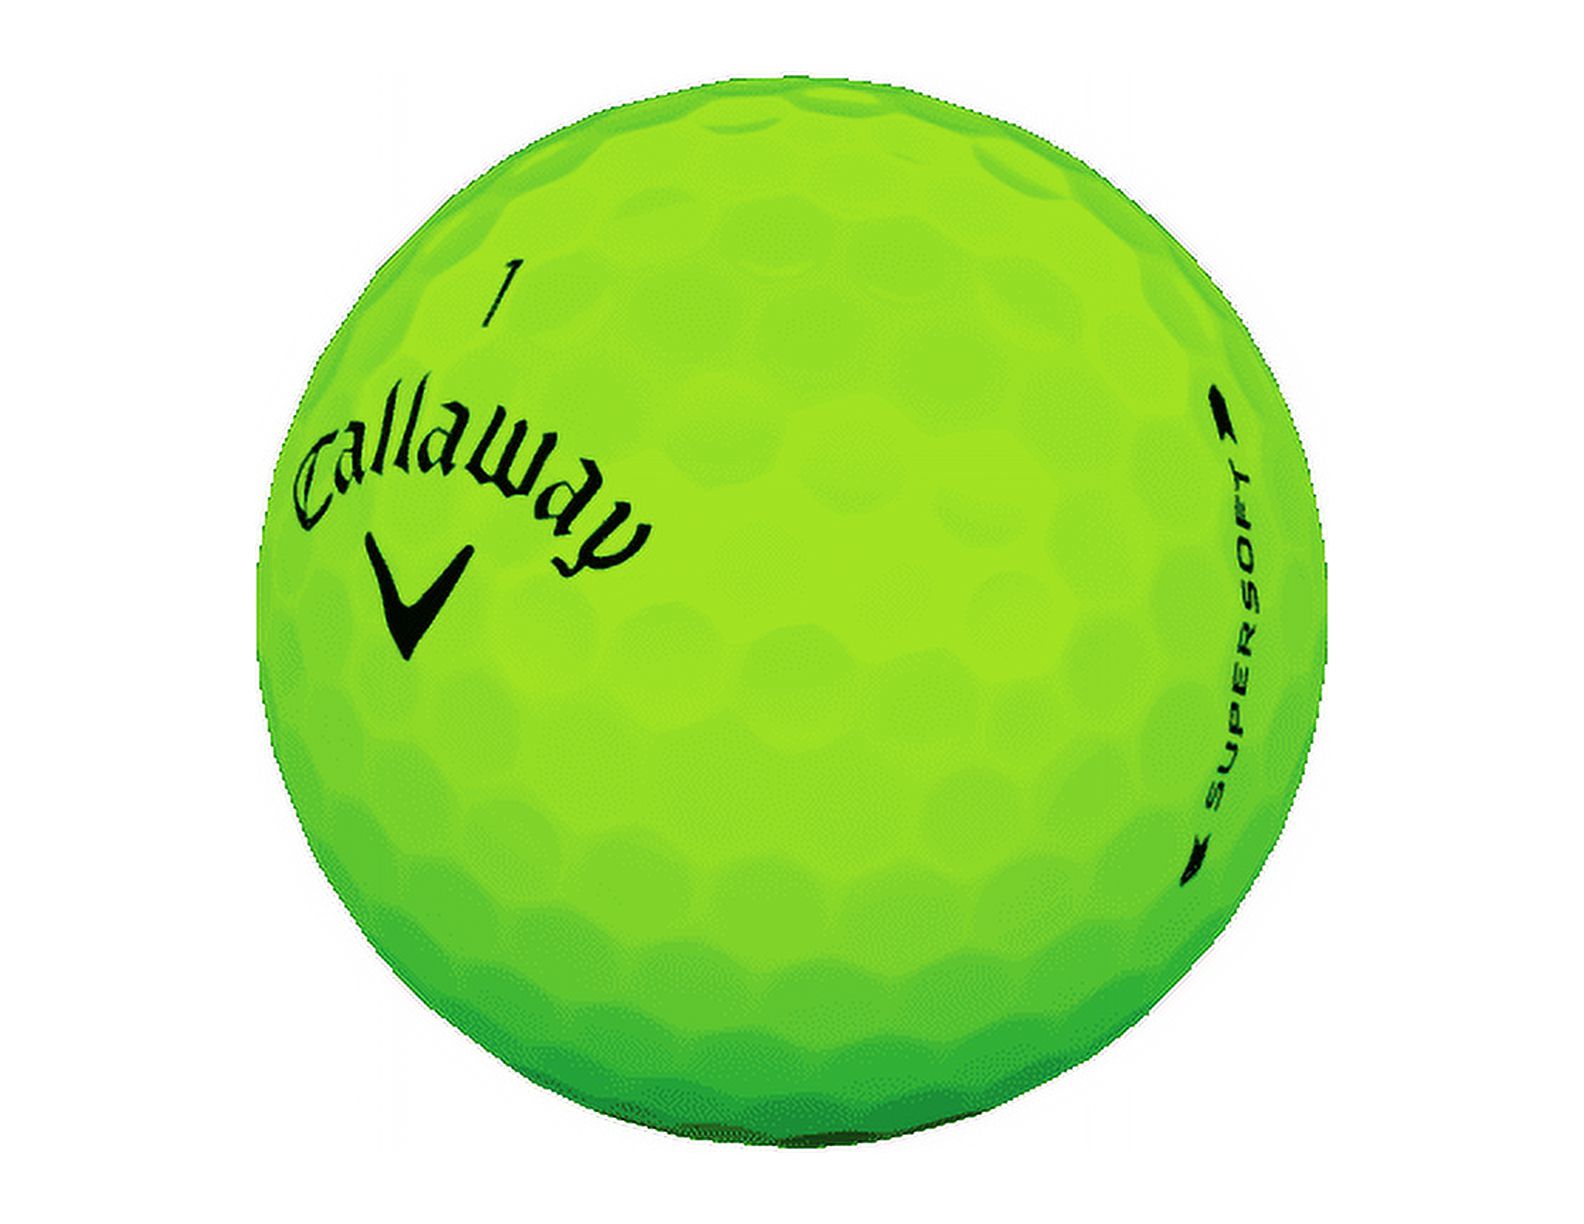 Callaway Golf Supersoft Golf Balls-One Dozen (Green Matte Color) - image 3 of 3